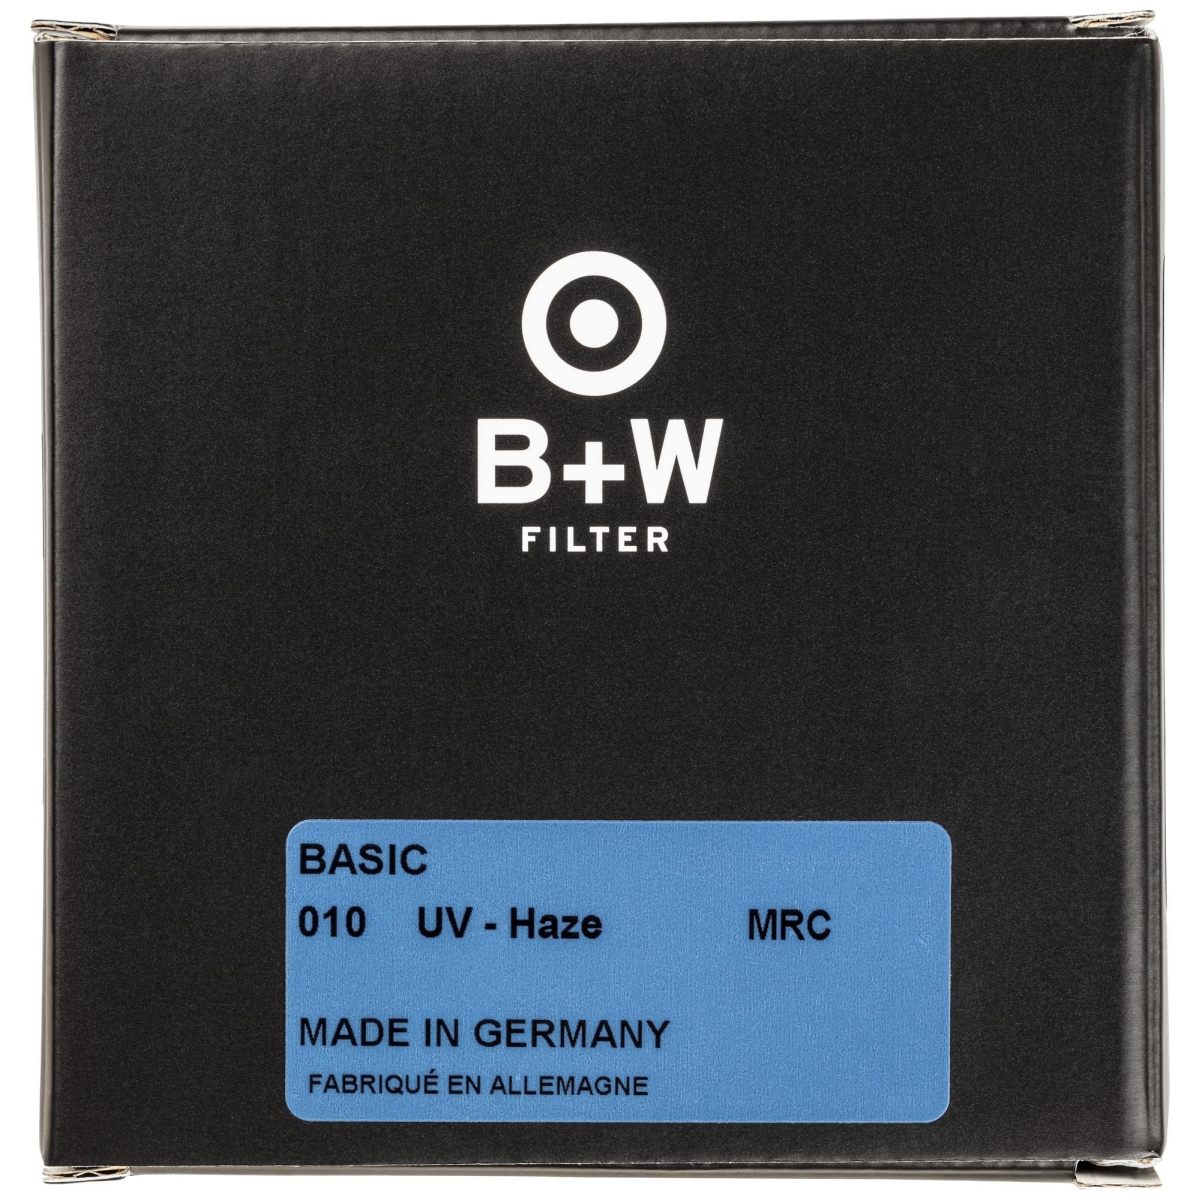 B+W UV 55 mm MRC Basic